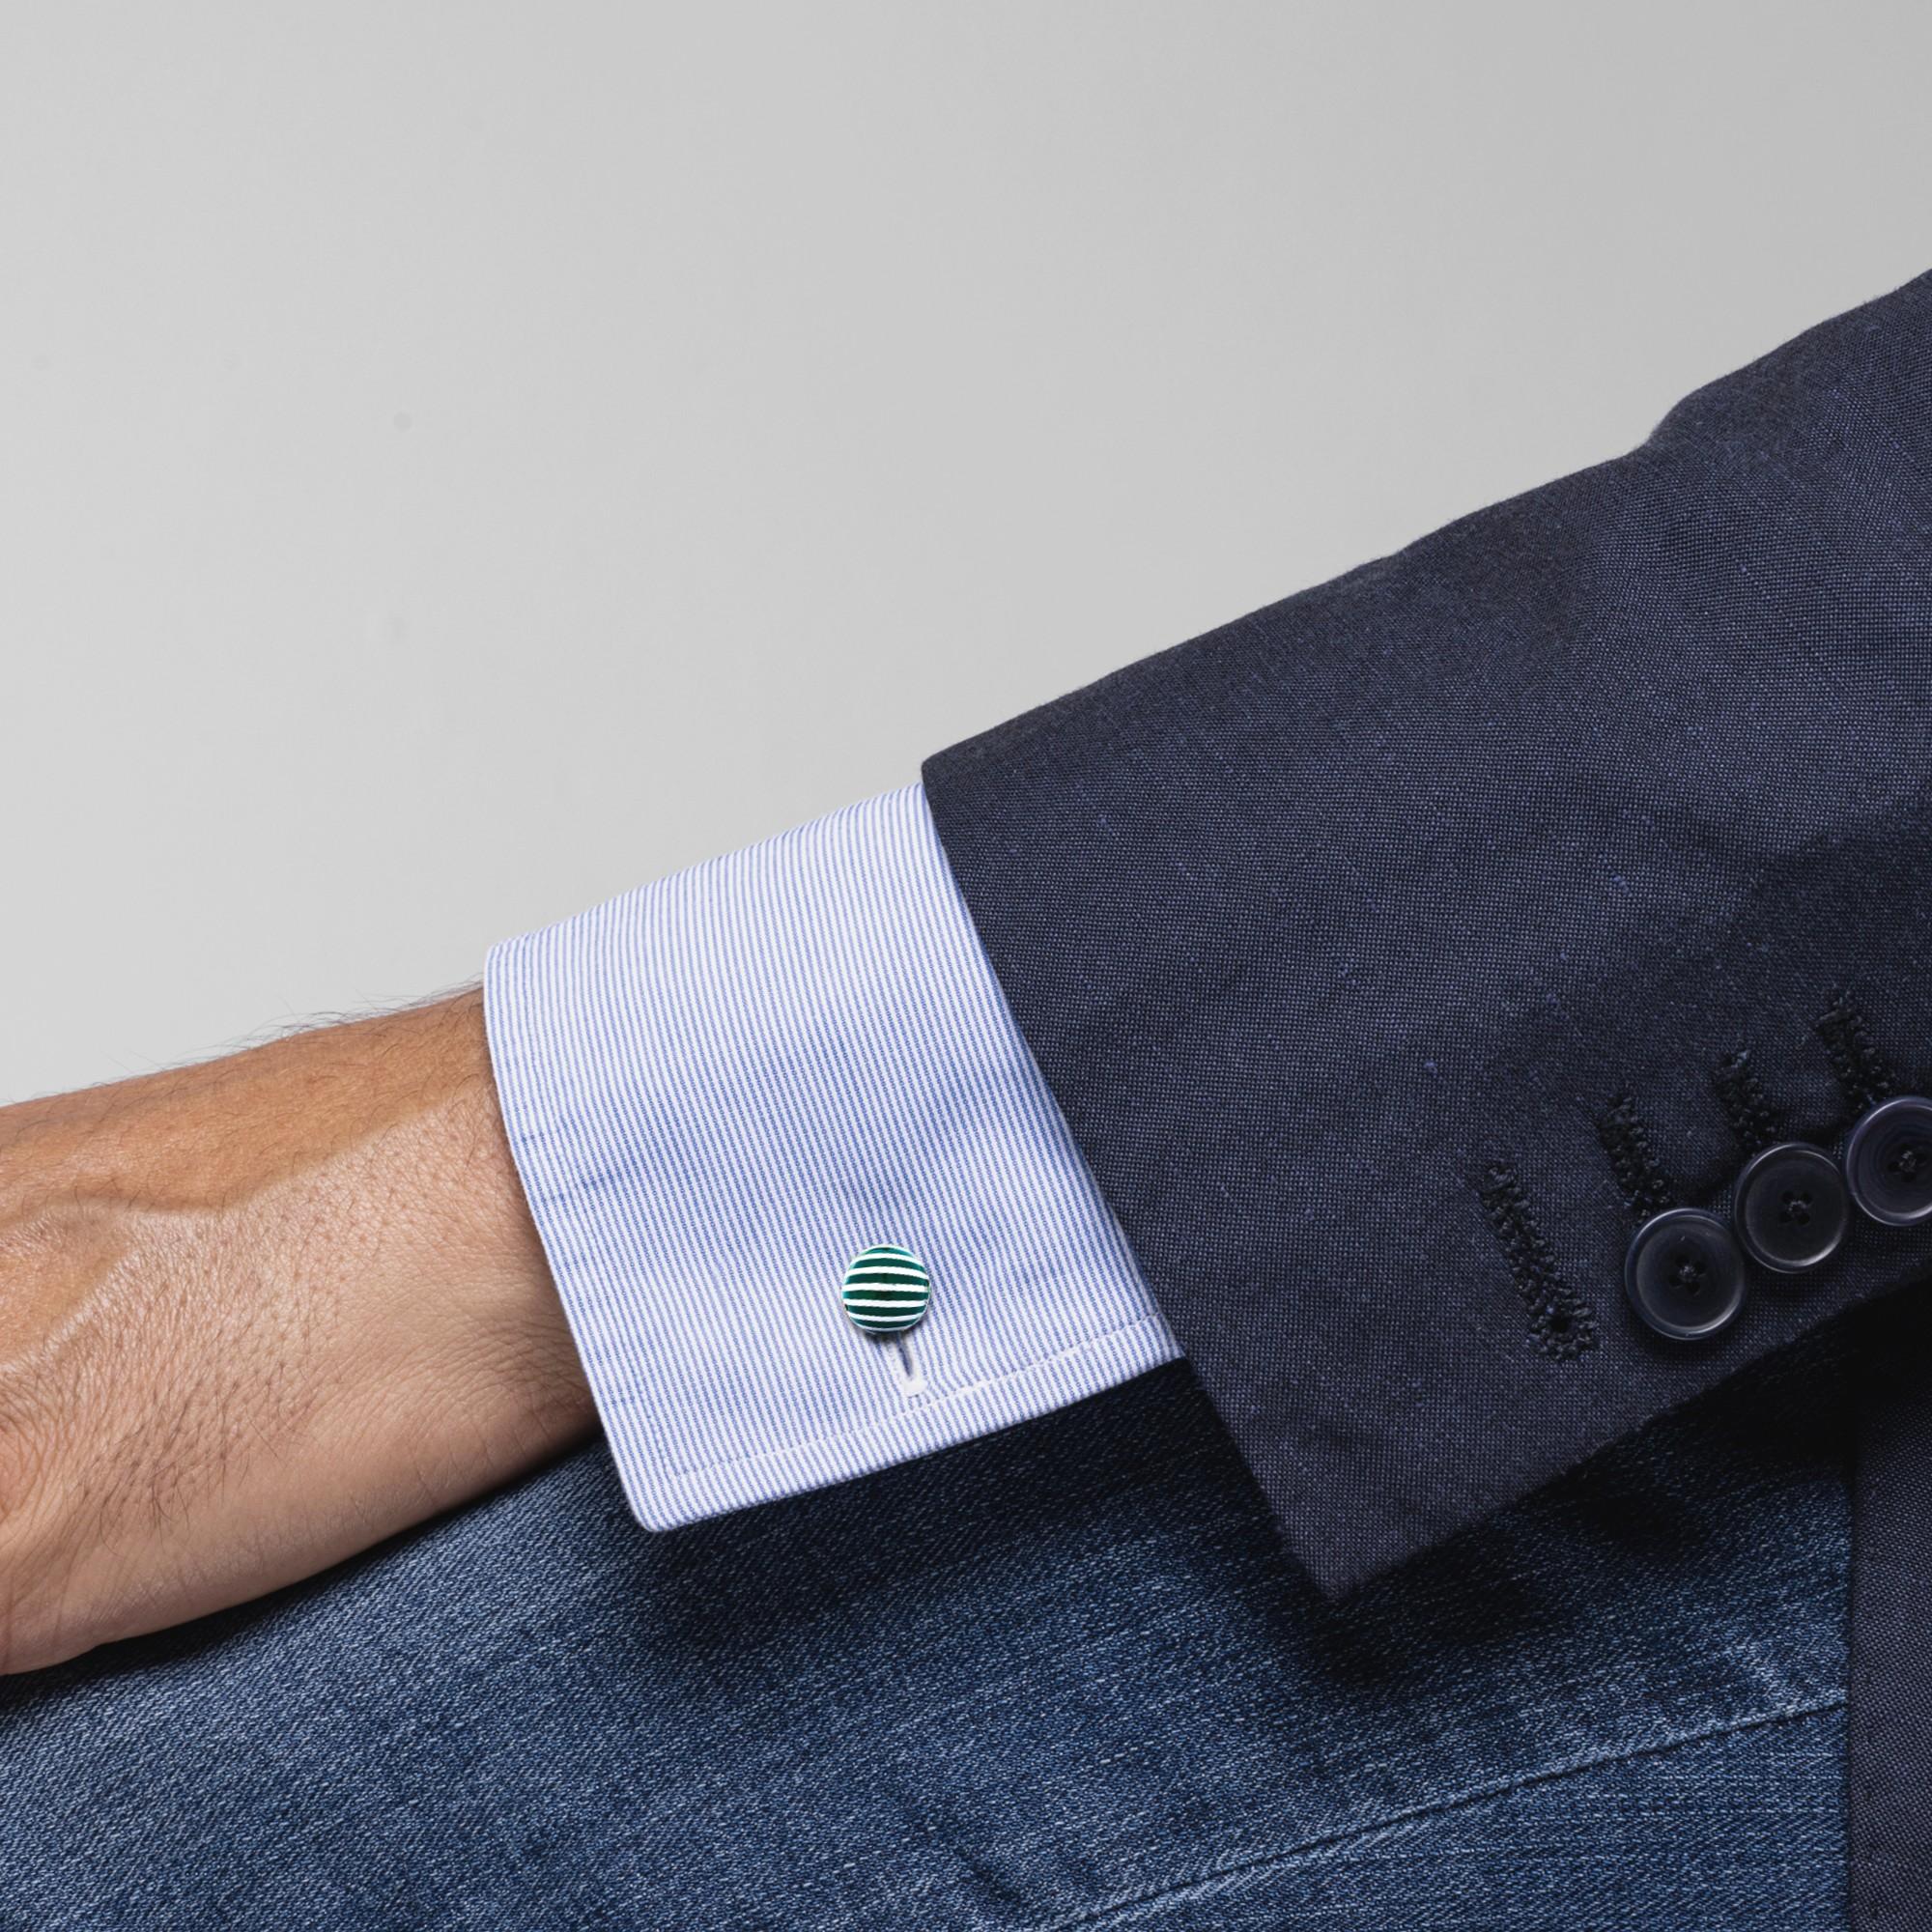 Collection Alex Jona design, fabriqués à la main en Italie, boutons de manchette en argent sterling à rayures émaillées vertes. Marqué Alex Jona-925. Ces boutons de manchette sont dotés d'une fermeture en T, ce qui permet de les utiliser facilement